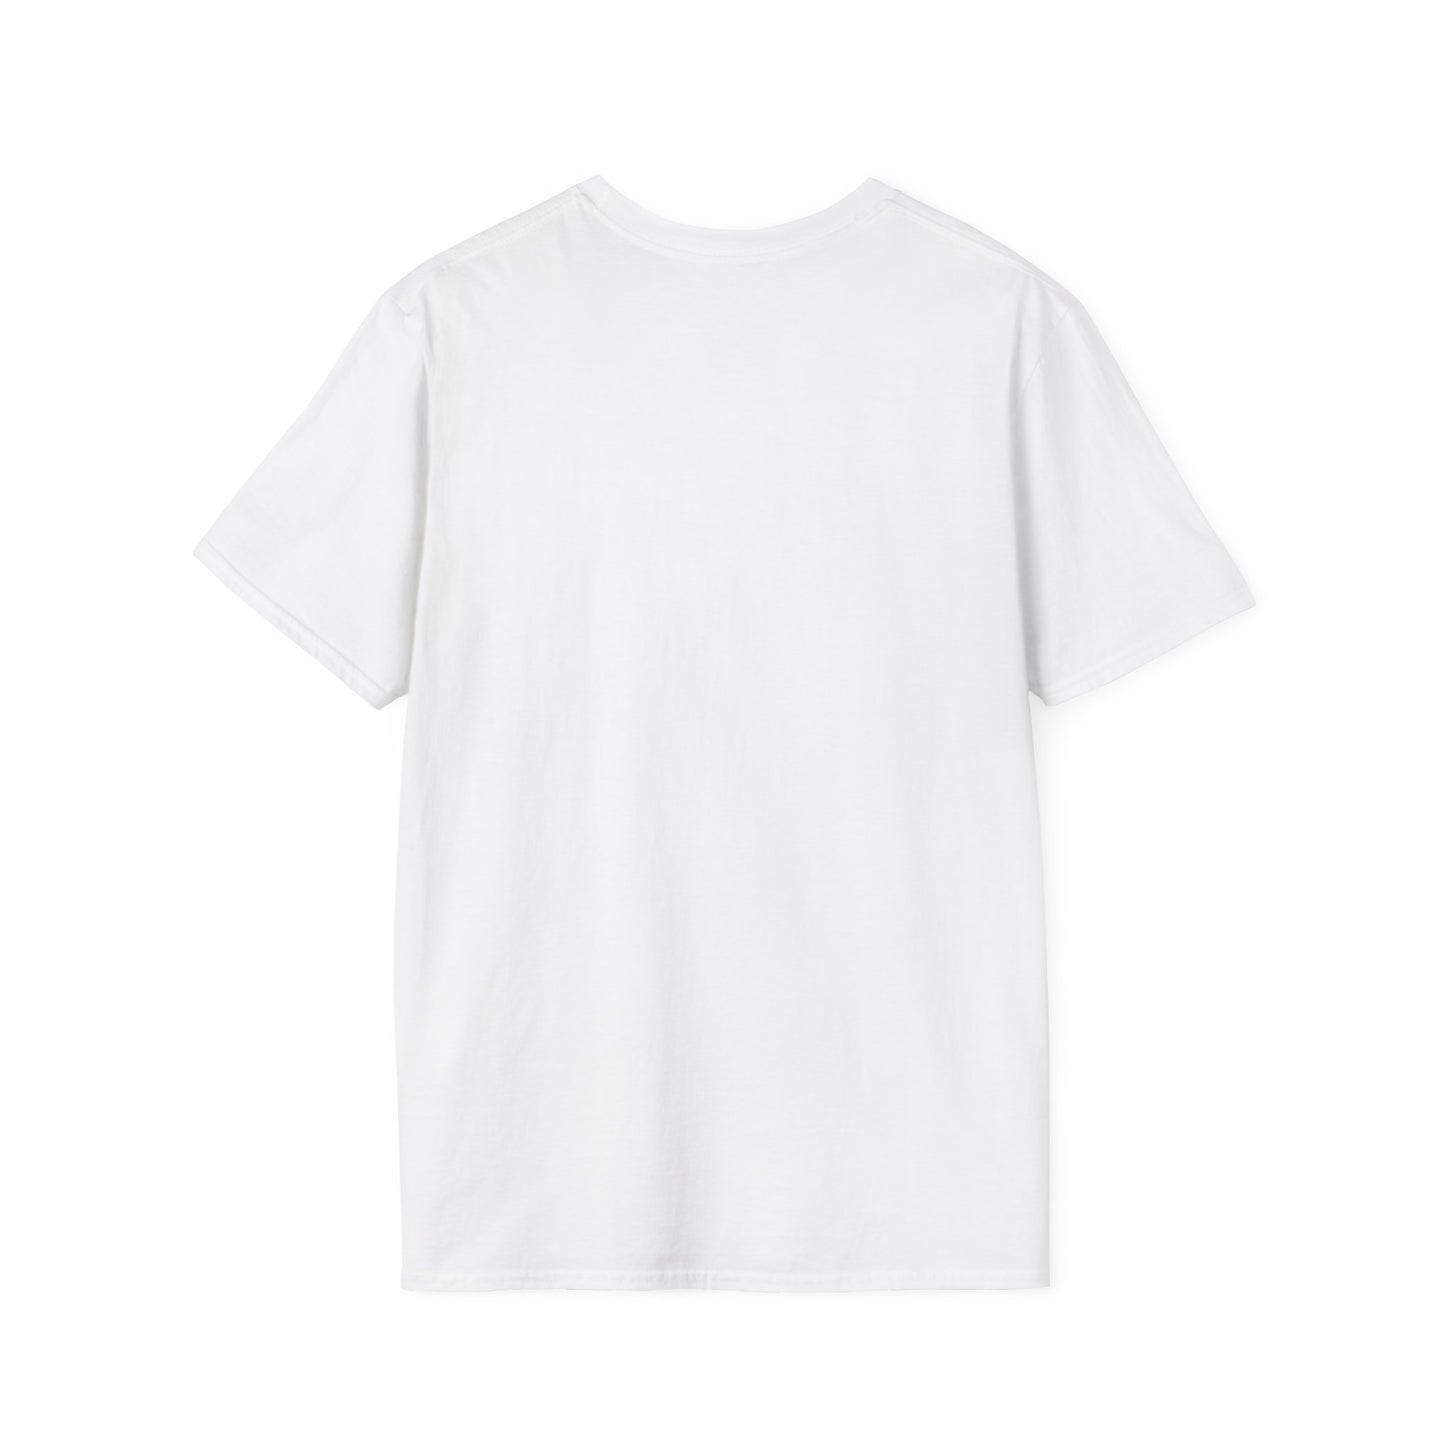 TG-3 Unisex Softstyle T-Shirt